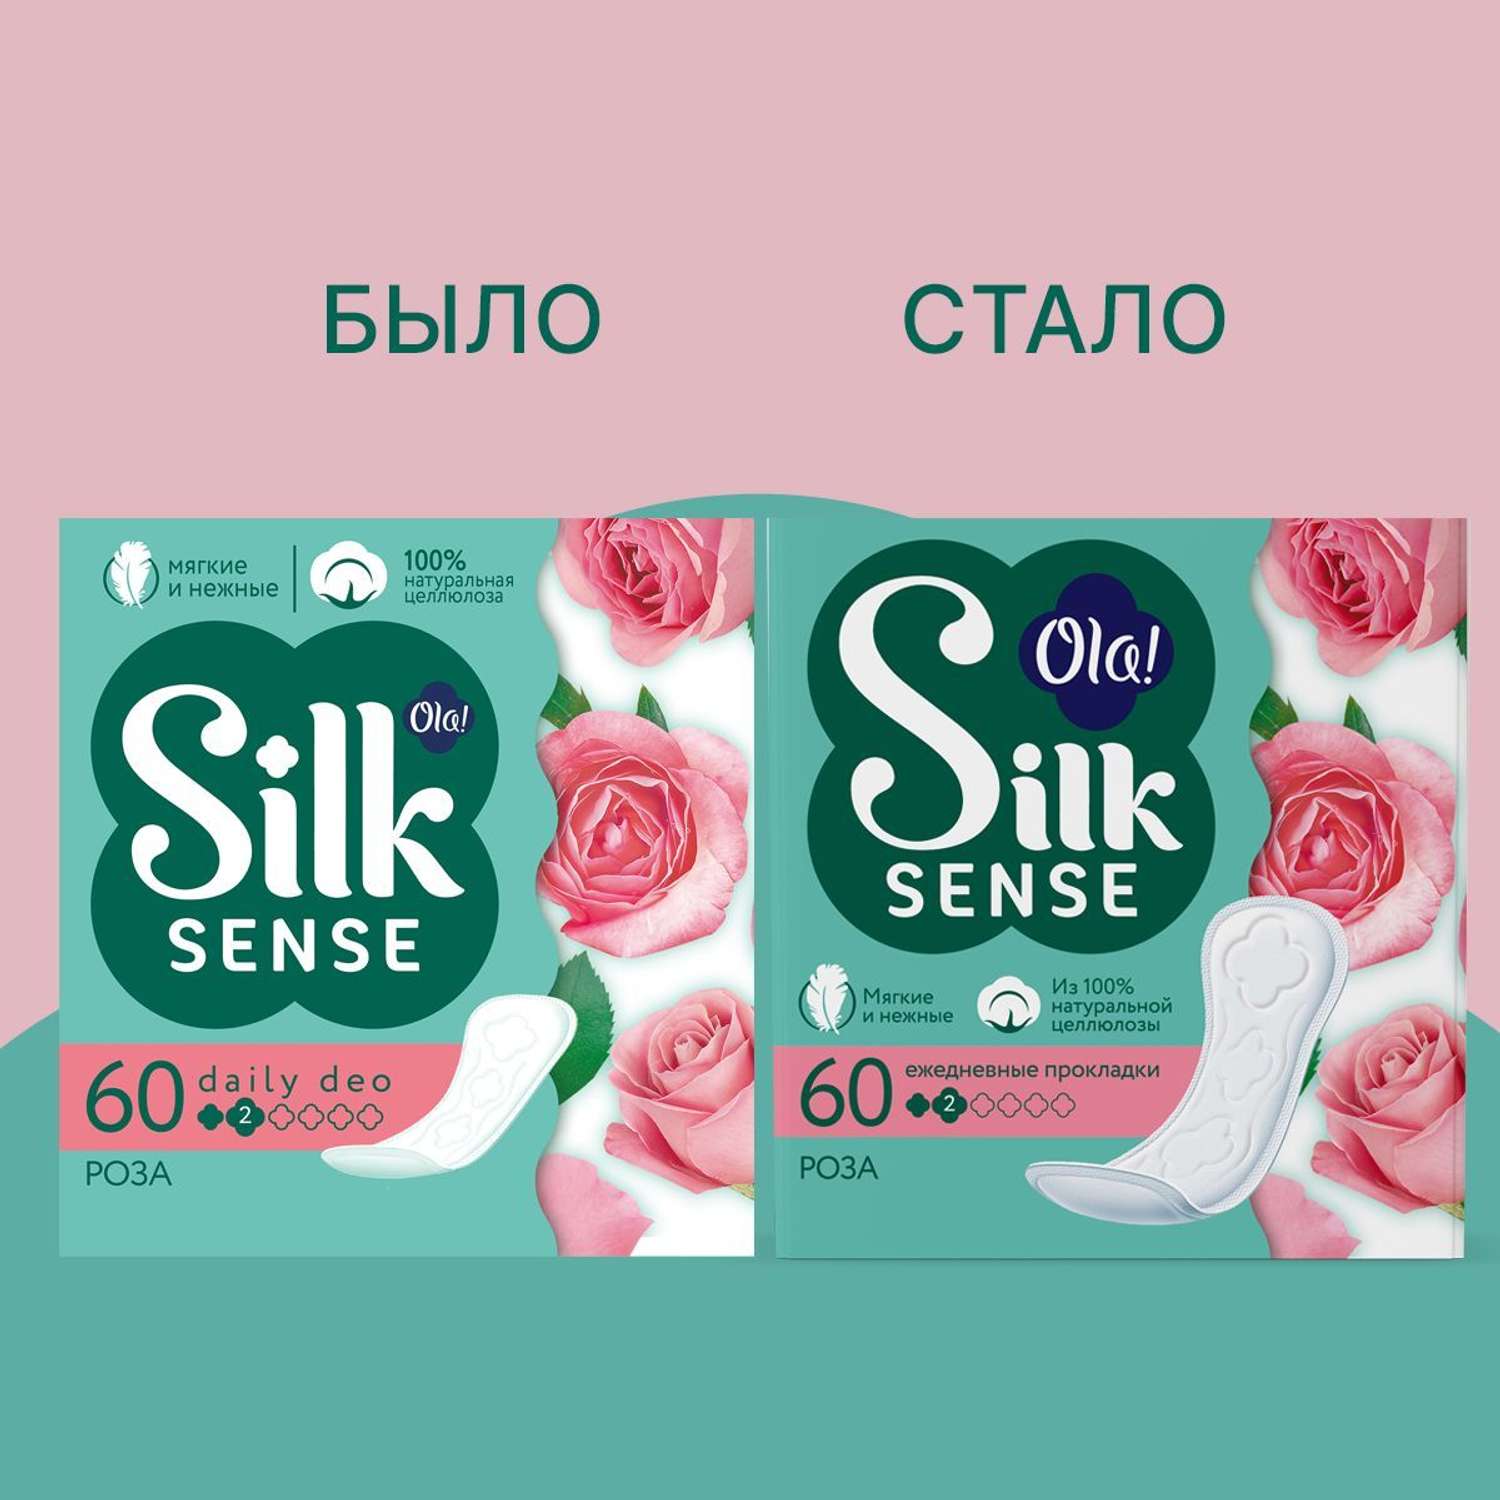 Ежедневные прокладки Ola! Silk Sense мягкие аромат Бархатная роза 60 шт - фото 2